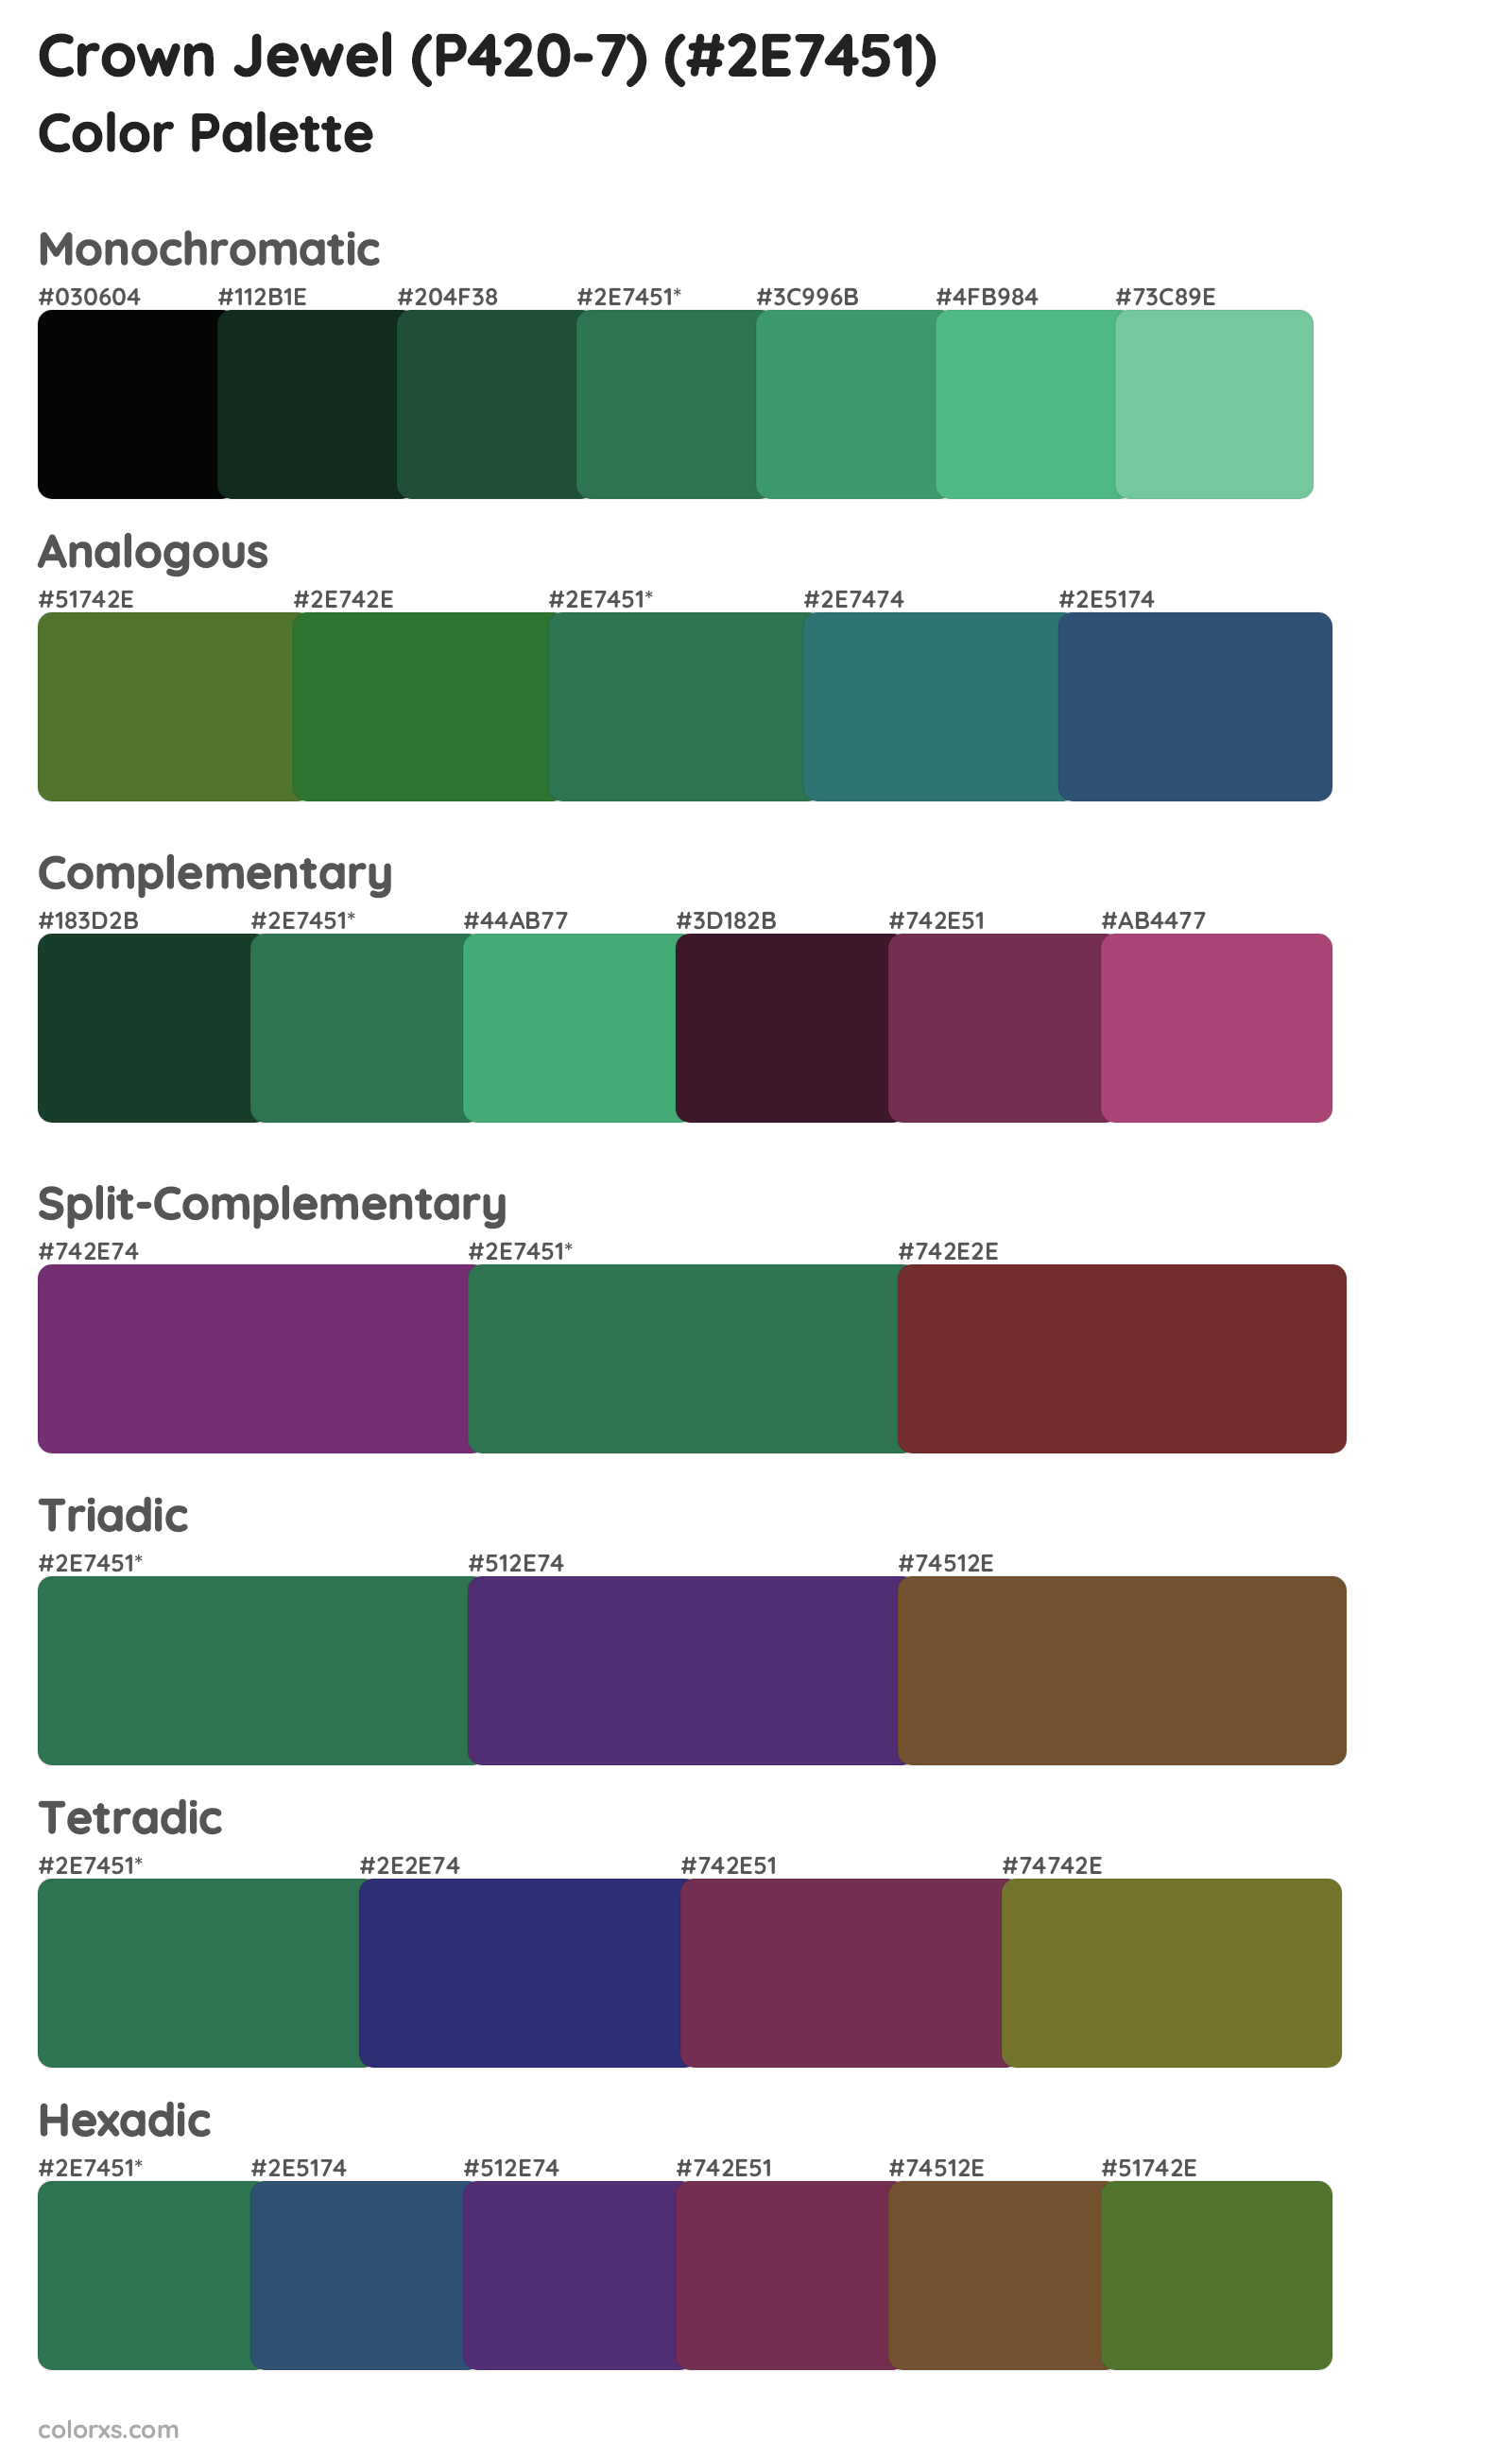 Crown Jewel (P420-7) Color Scheme Palettes